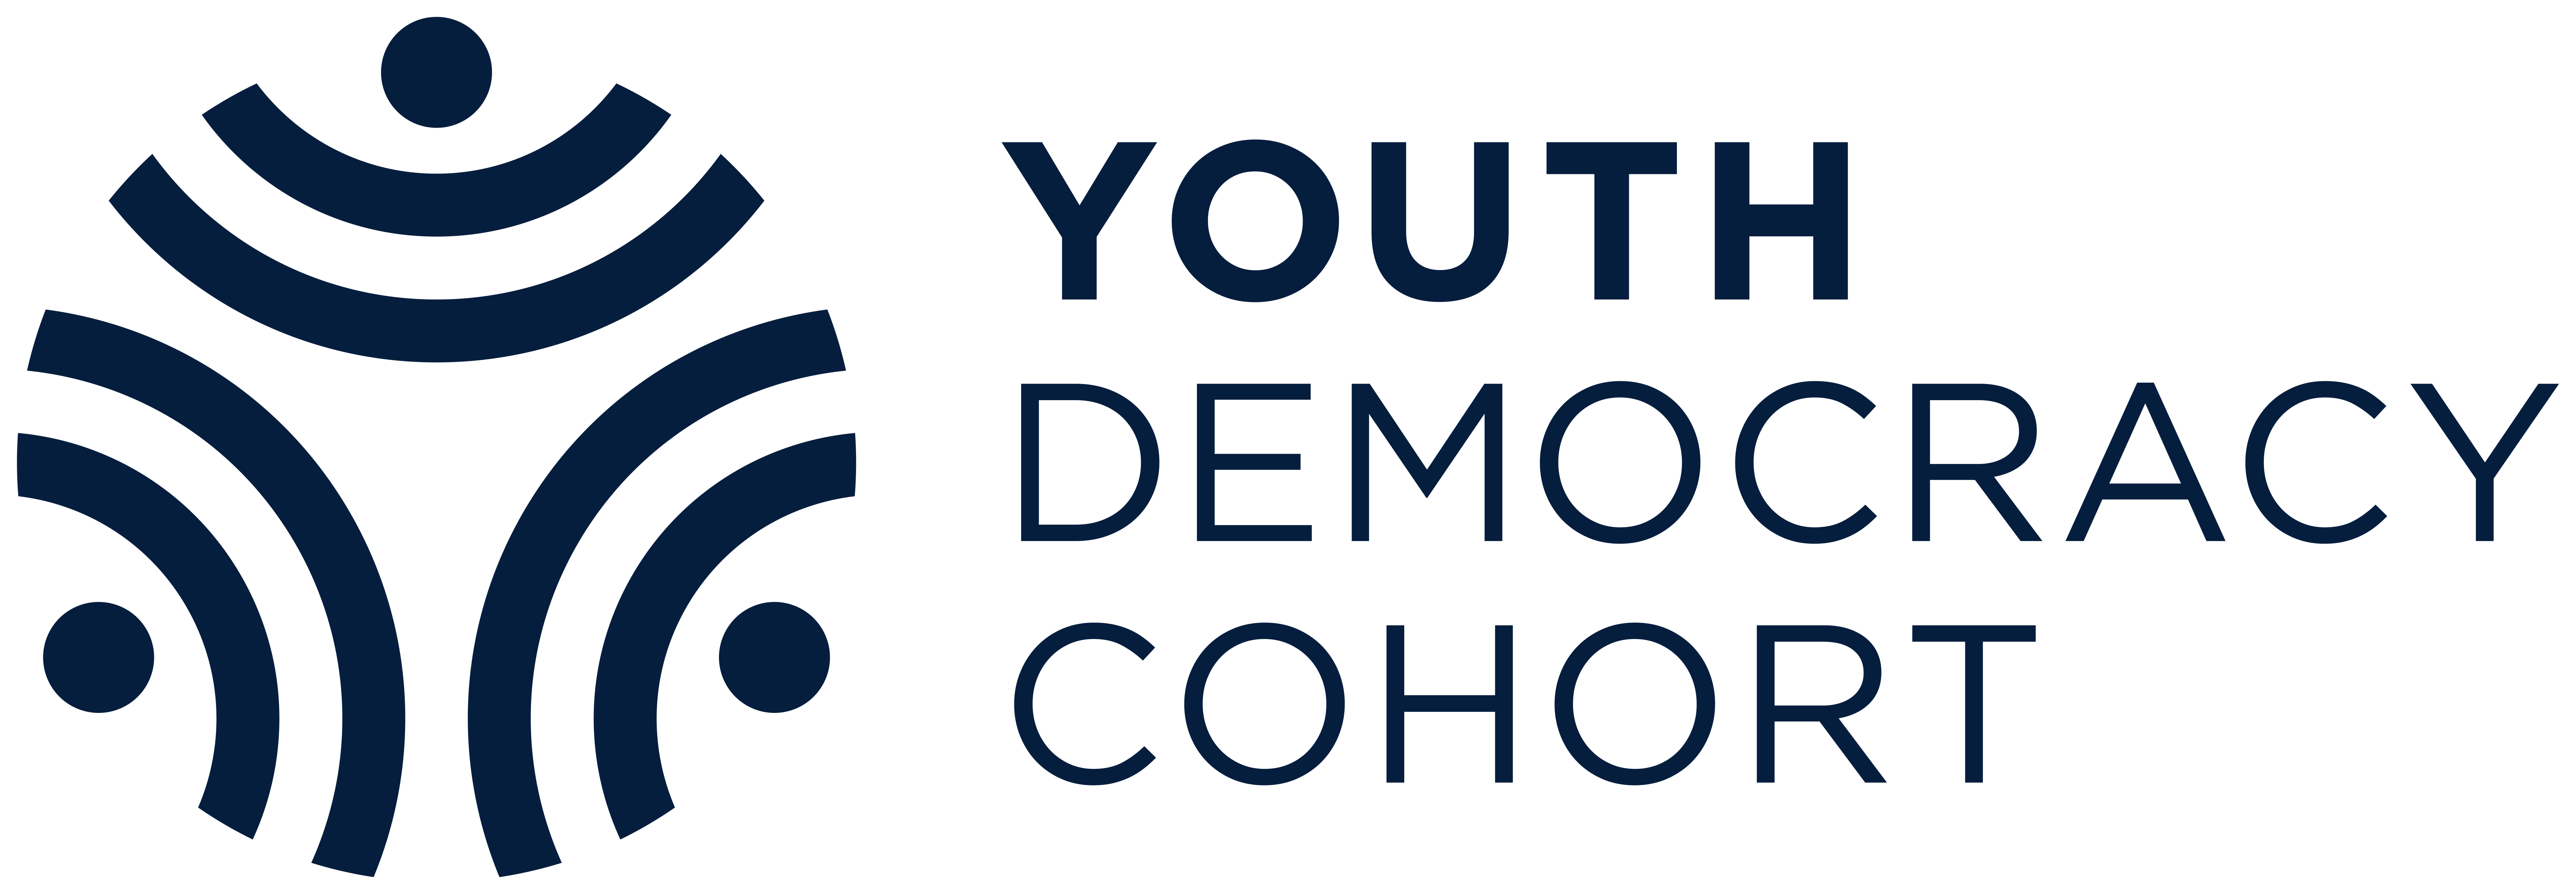 Youth Democracy Cohort